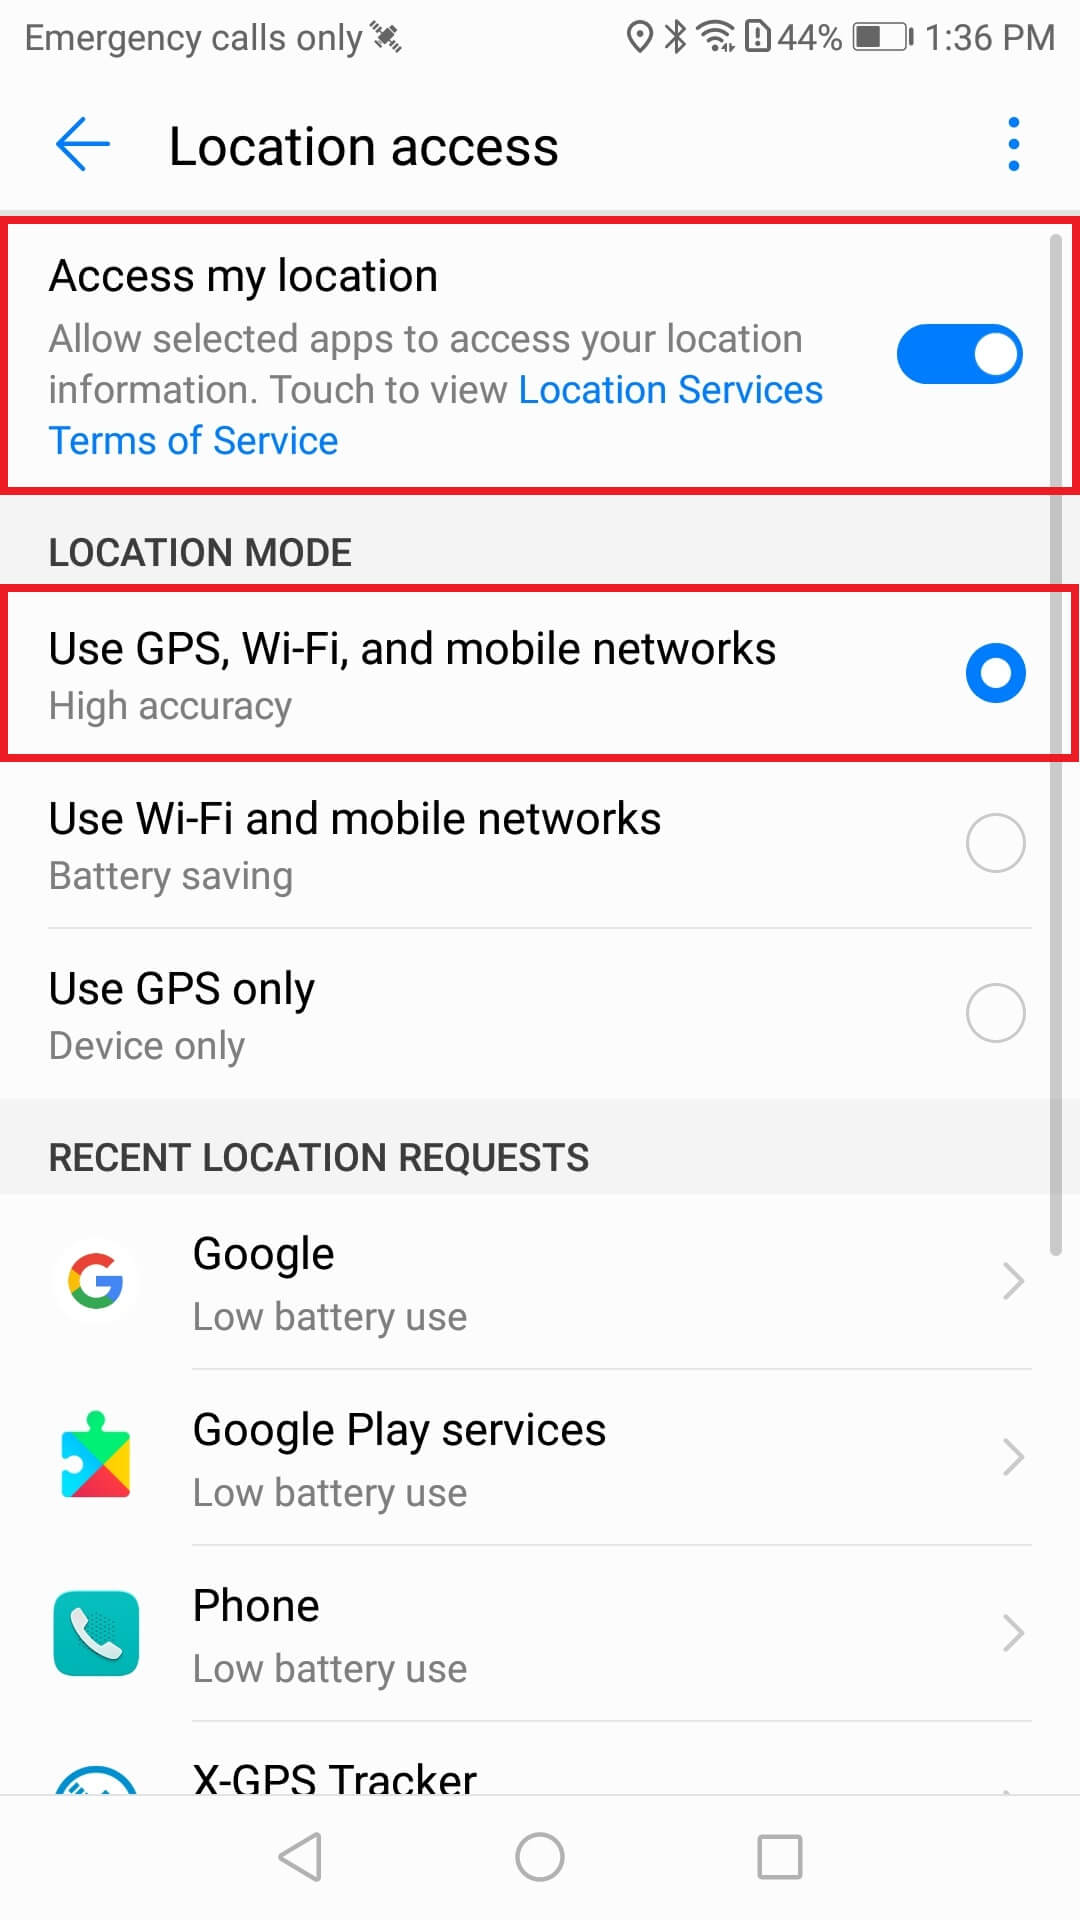 Huawei: Usage tips